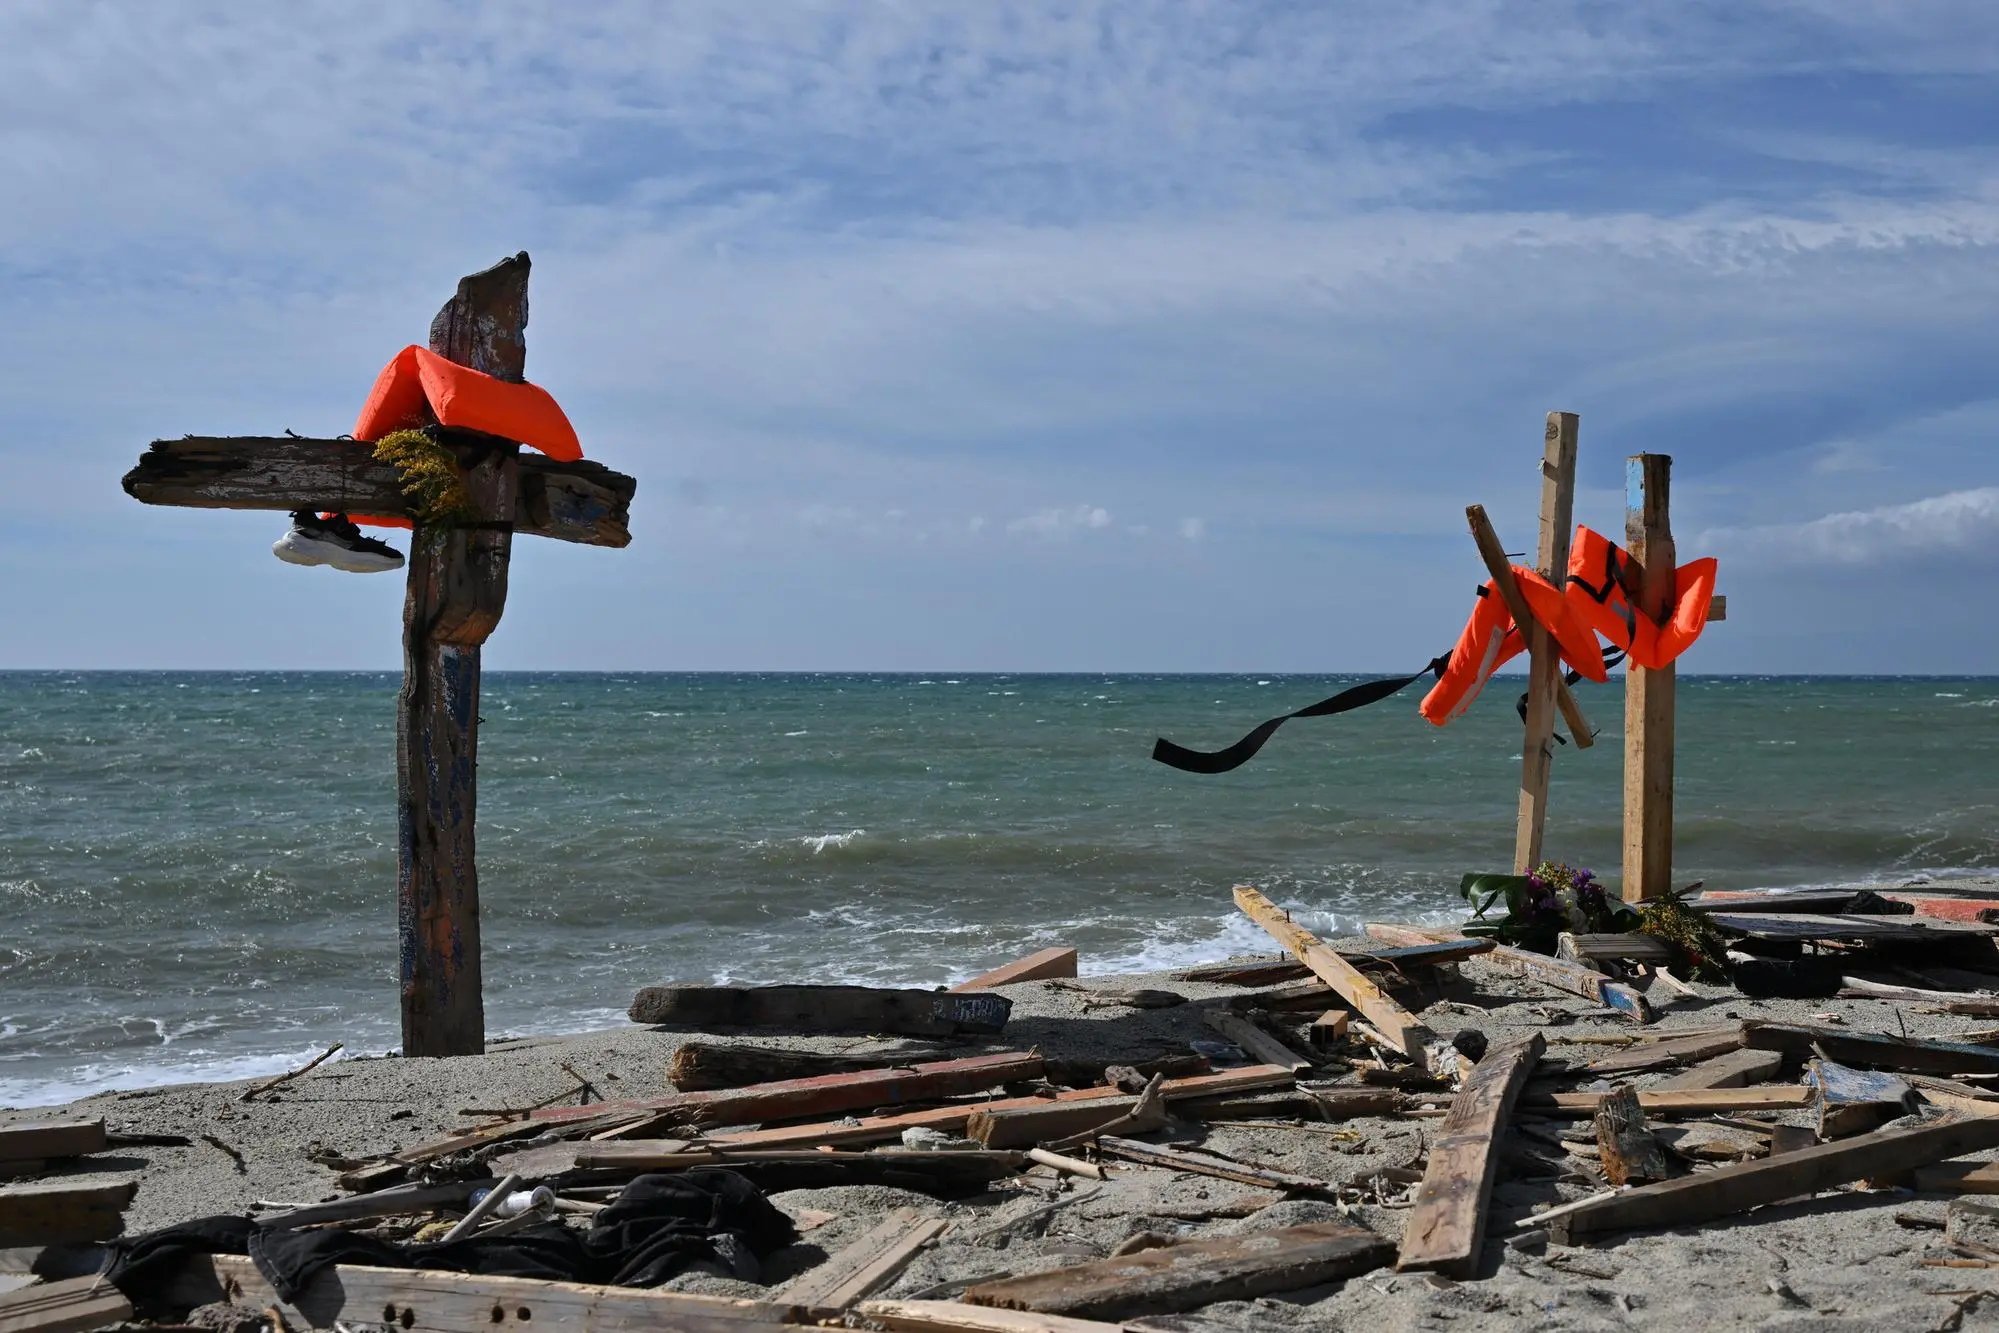 Croci sul luogo del naufragio a Steccato di Cutro. Cutro, Crotone, 9 marzo 2023. ANSA/CARMELO IMBESI